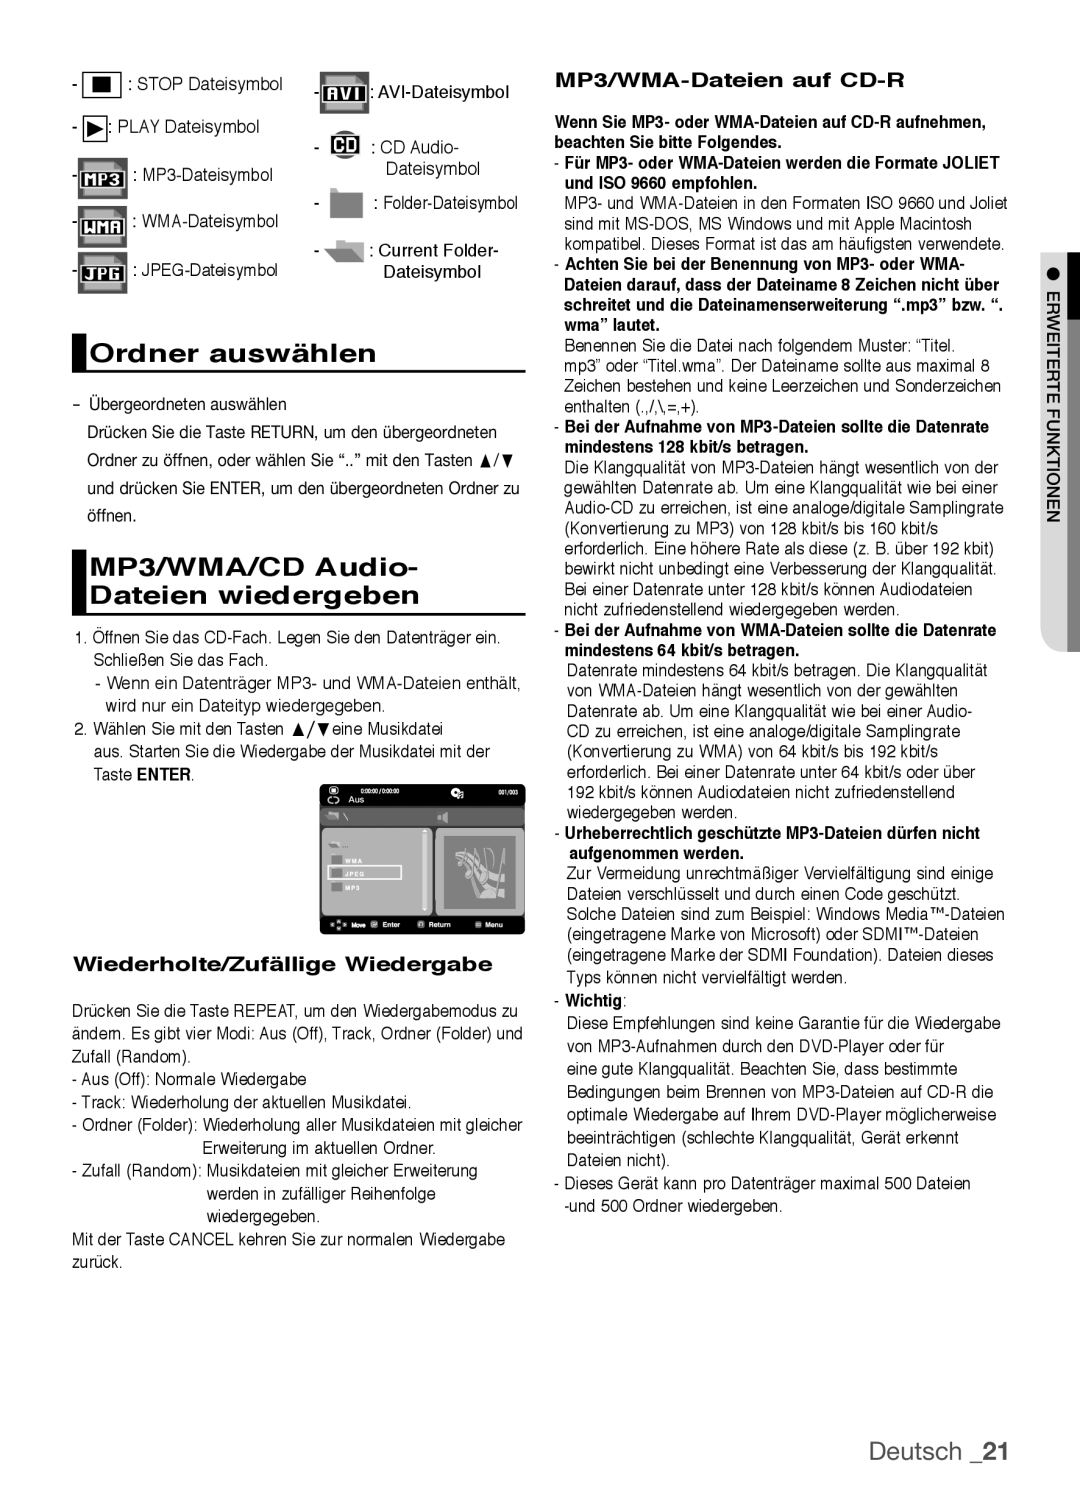 Samsung DVD-H1080W/EDC Ordner auswählen, MP3/WMA/CD Audio Dateien wiedergeben, Deutsch, Wiederholte/Zufällige Wiedergabe 